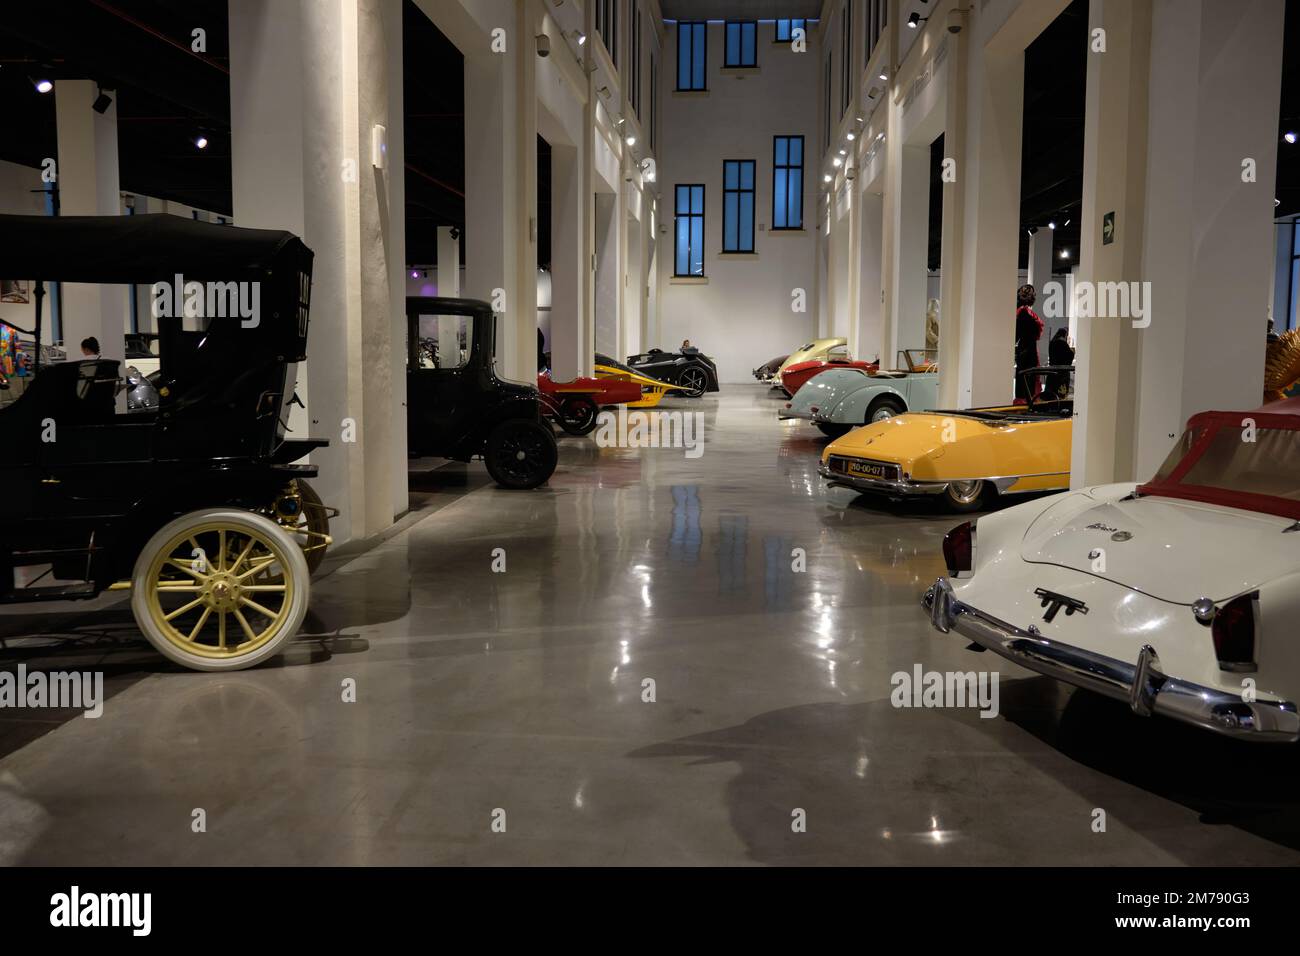 Museo automovilistico, musée automobile de Malaga, Espagne. Banque D'Images